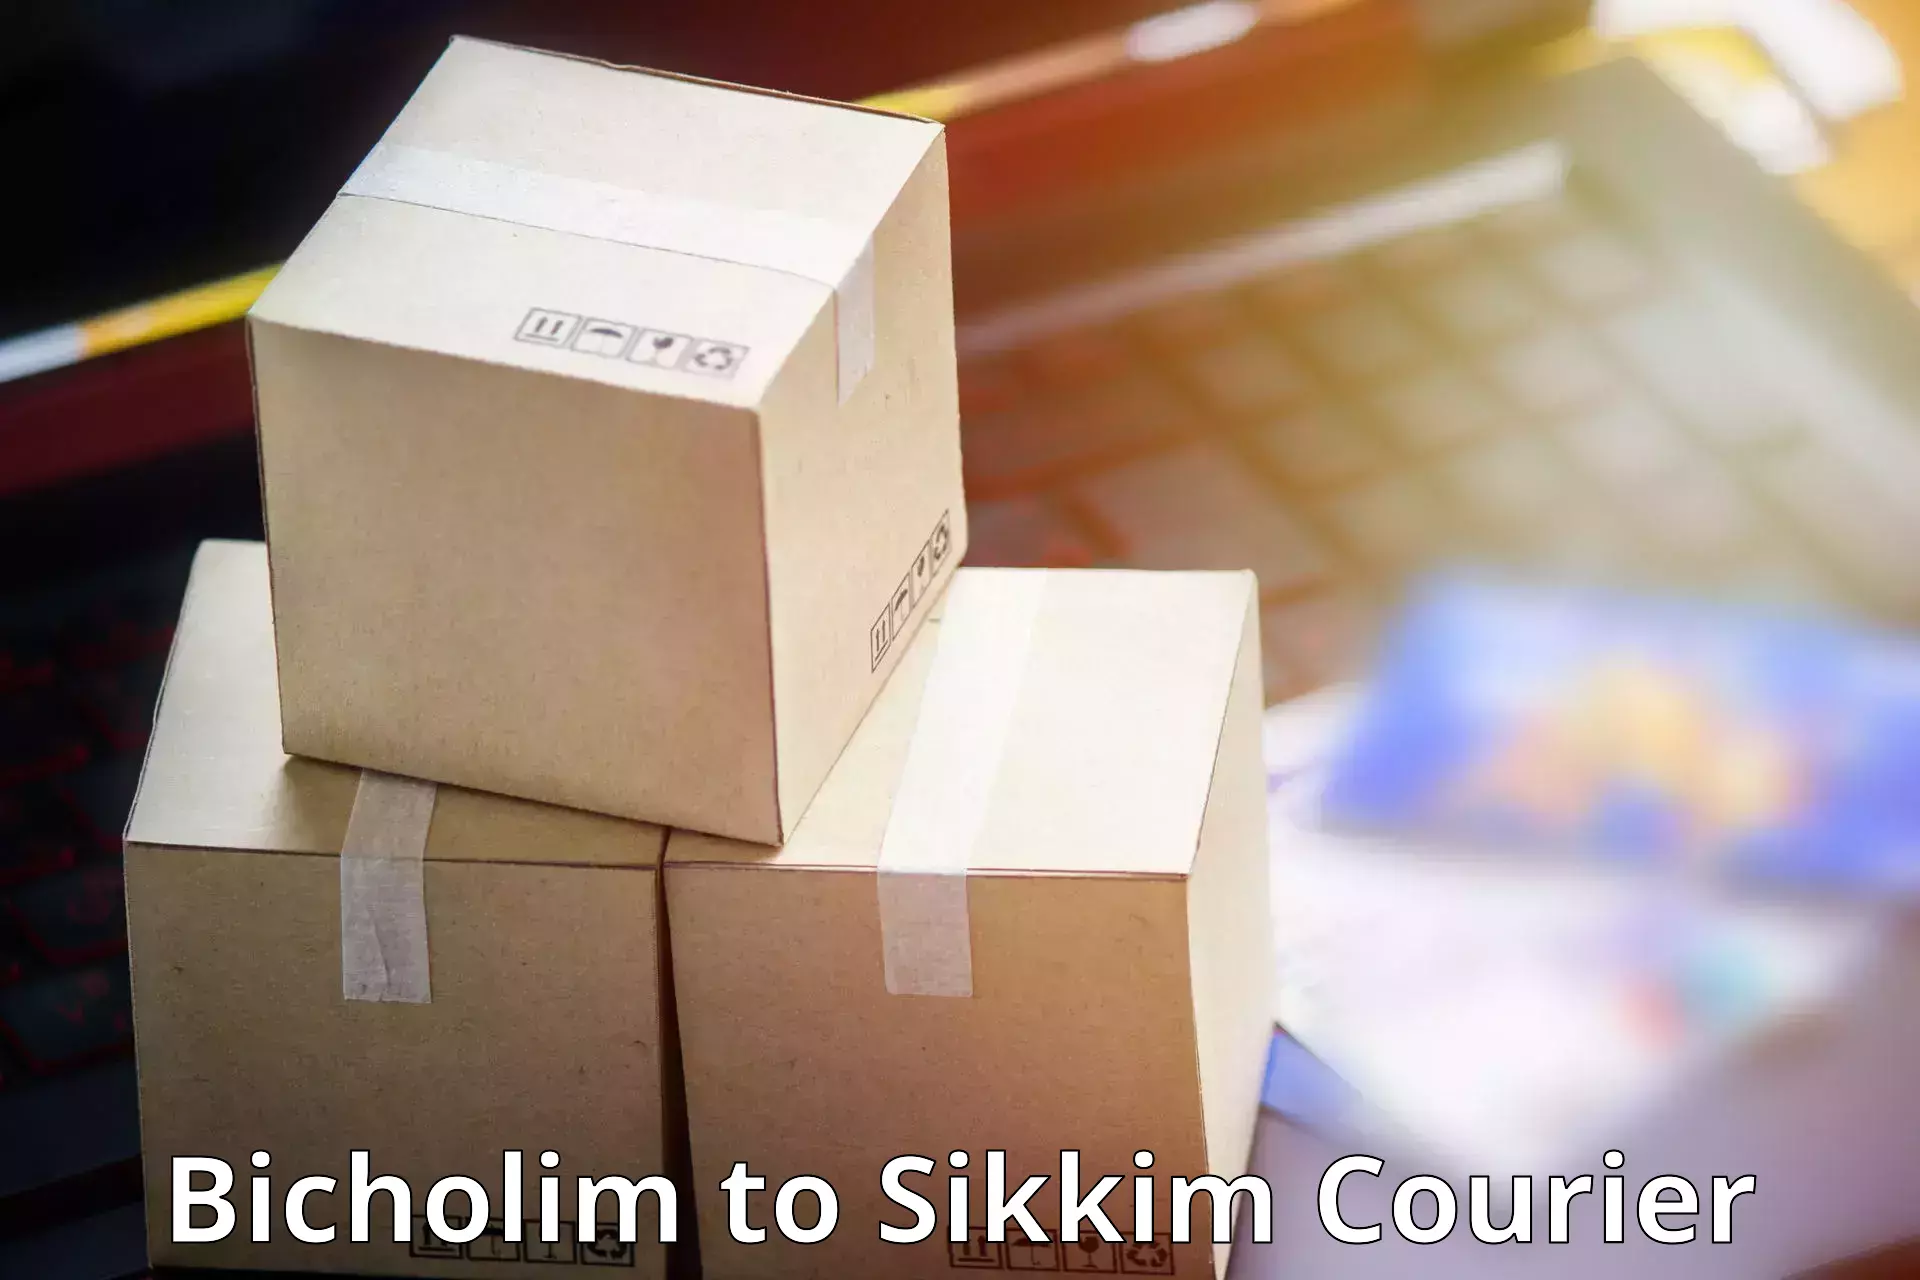 Efficient parcel service Bicholim to East Sikkim